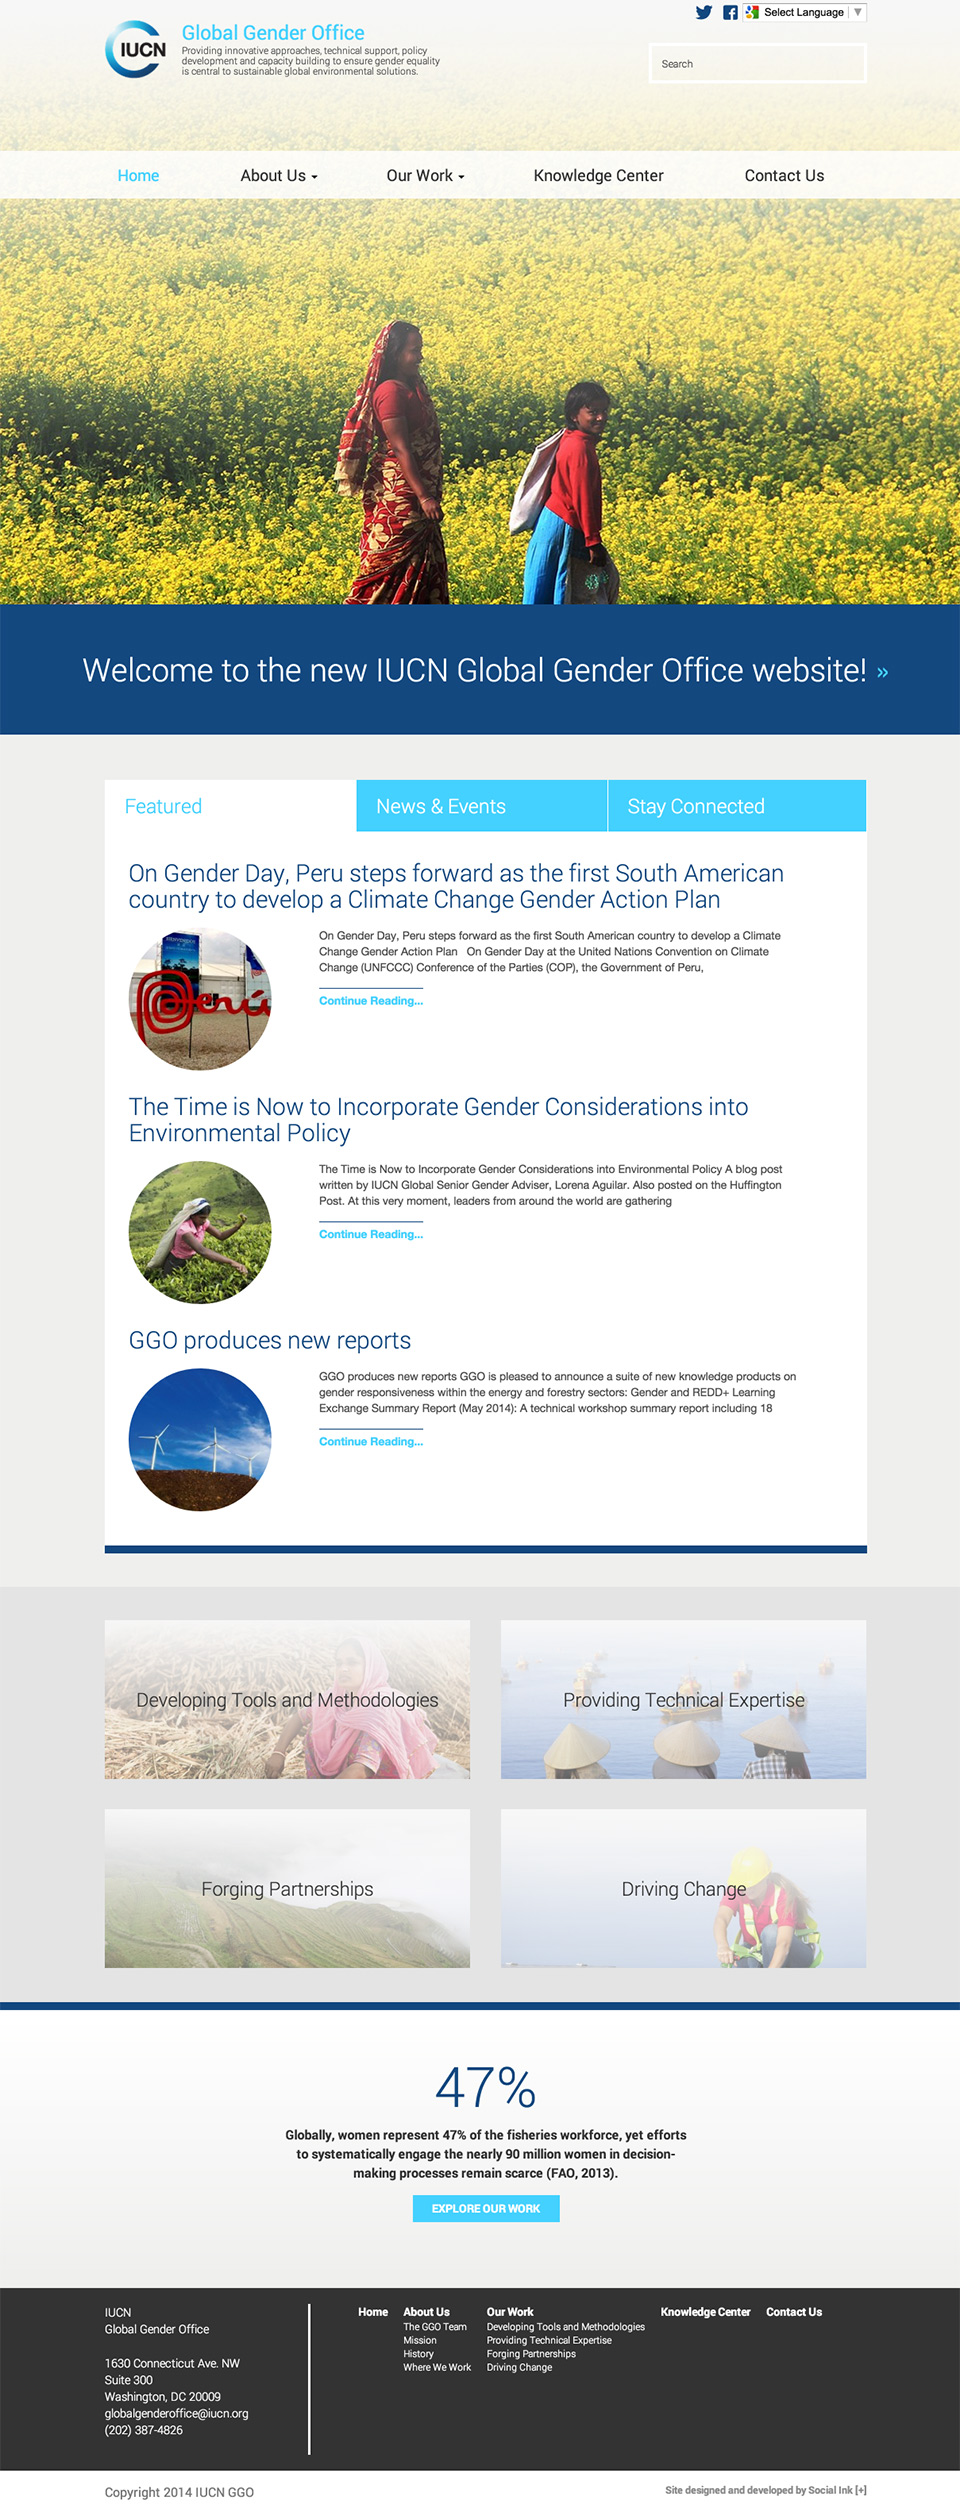 IUCN Global Gender Office: Full Homepage Snapshot